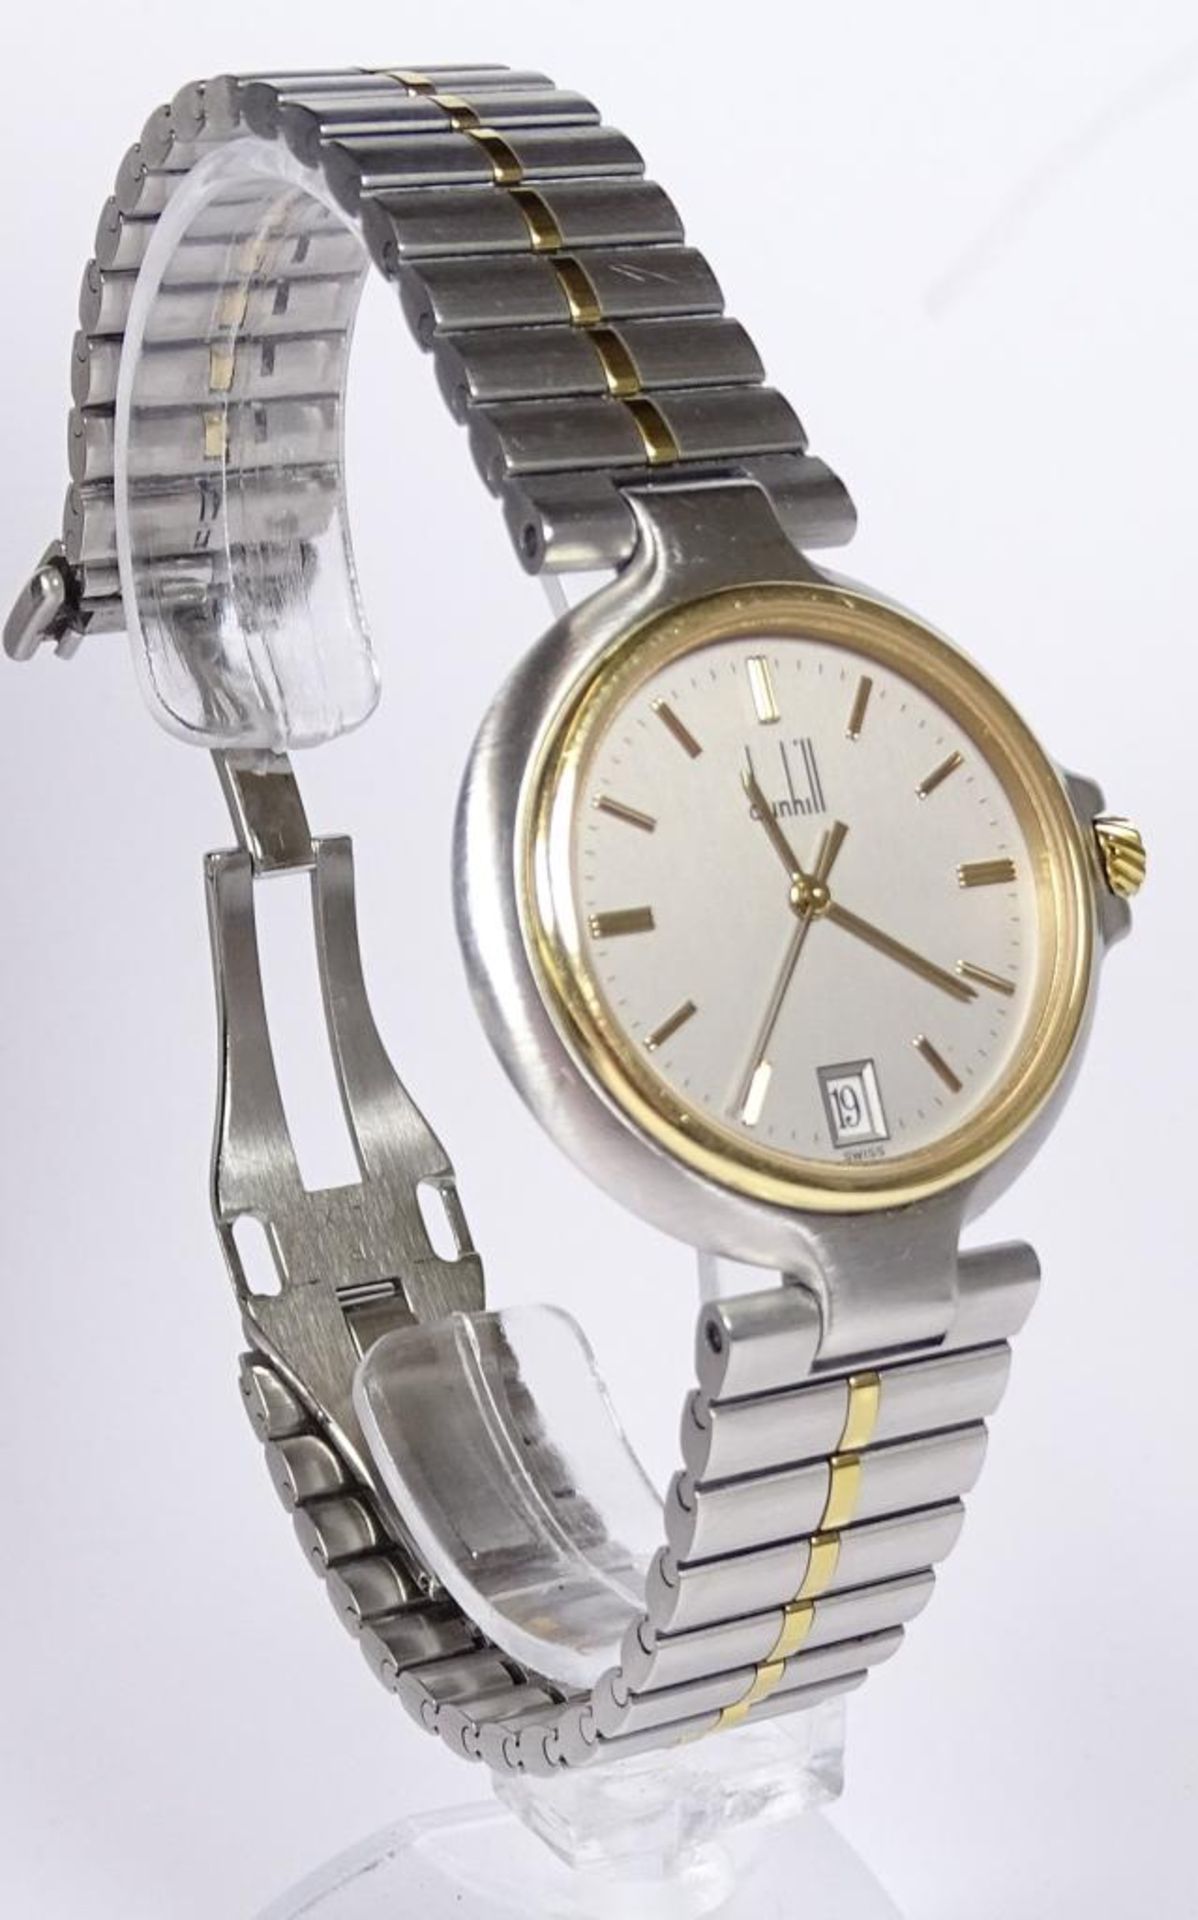 Armbanduhr "Dunhill",Saphirglas,Quartz,in orig.Schachtel,guter Zustand - Bild 3 aus 5